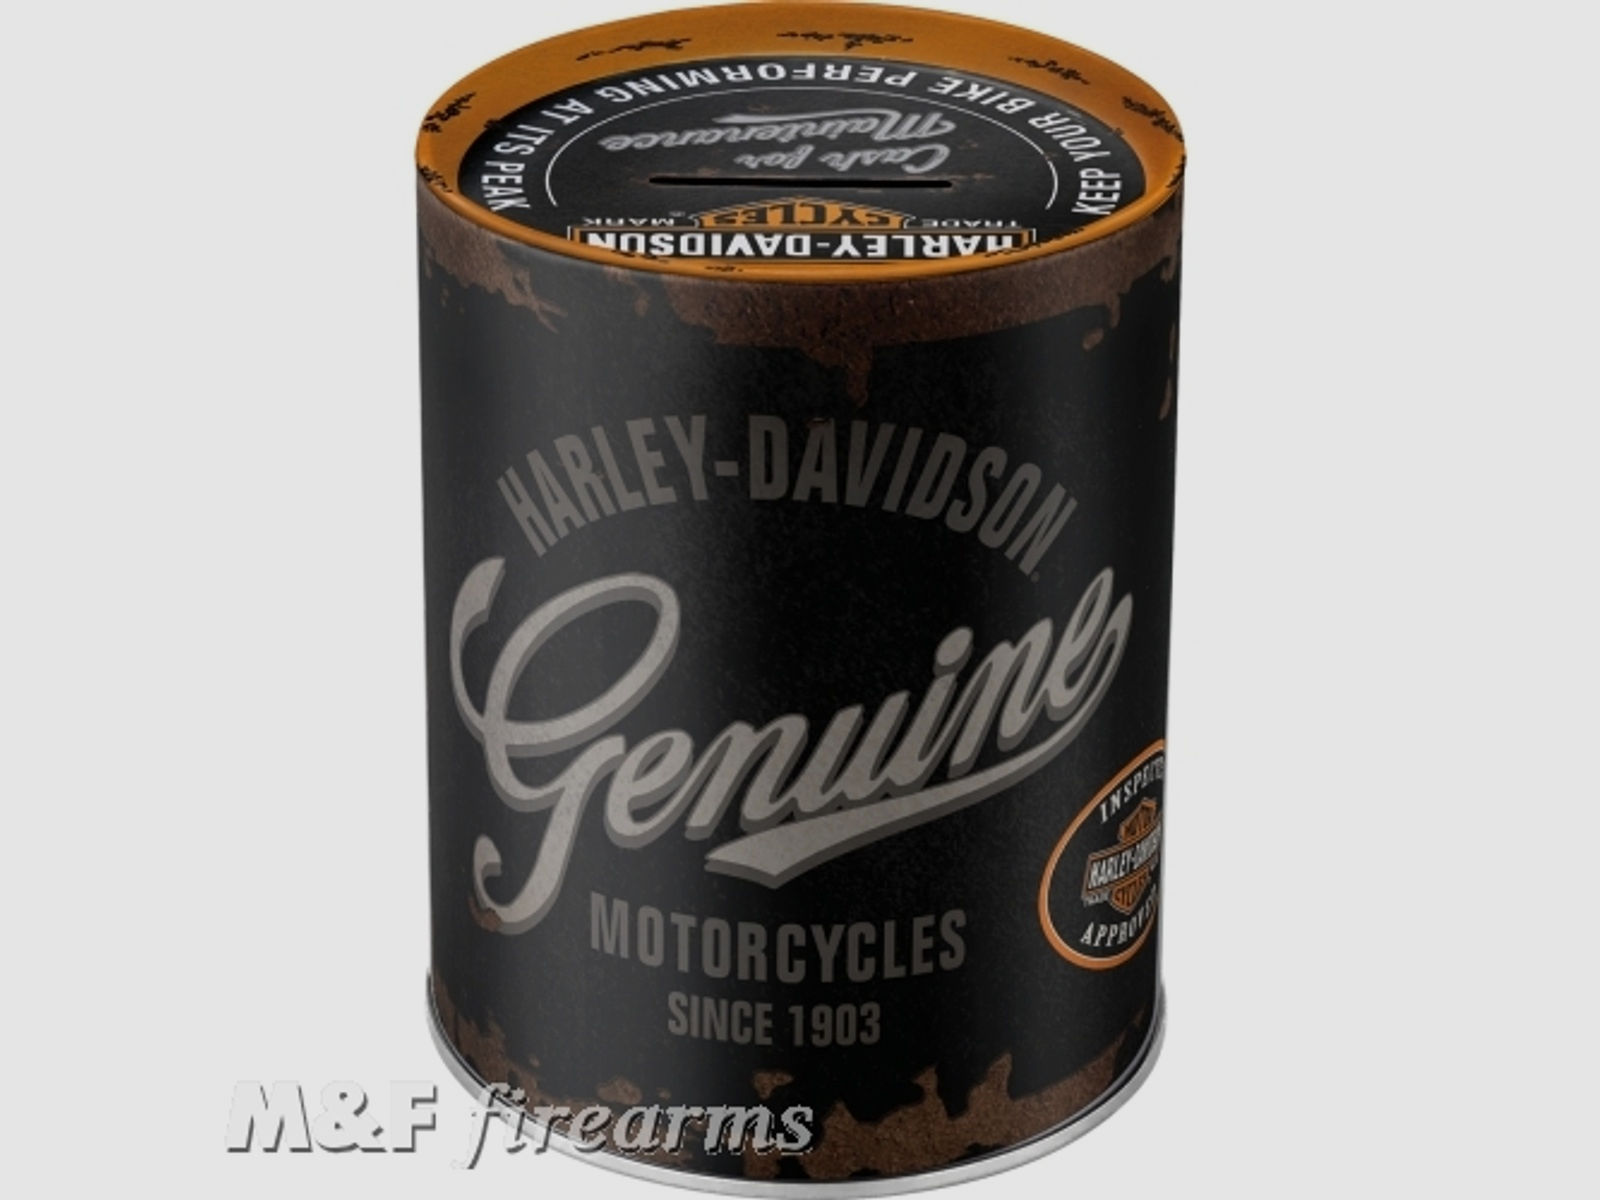 Harley-Davidson "Genuine Logo" Spardose ca. 13 (Höhe) x 10 (Durchmesser) cm von Nostalgic-Art